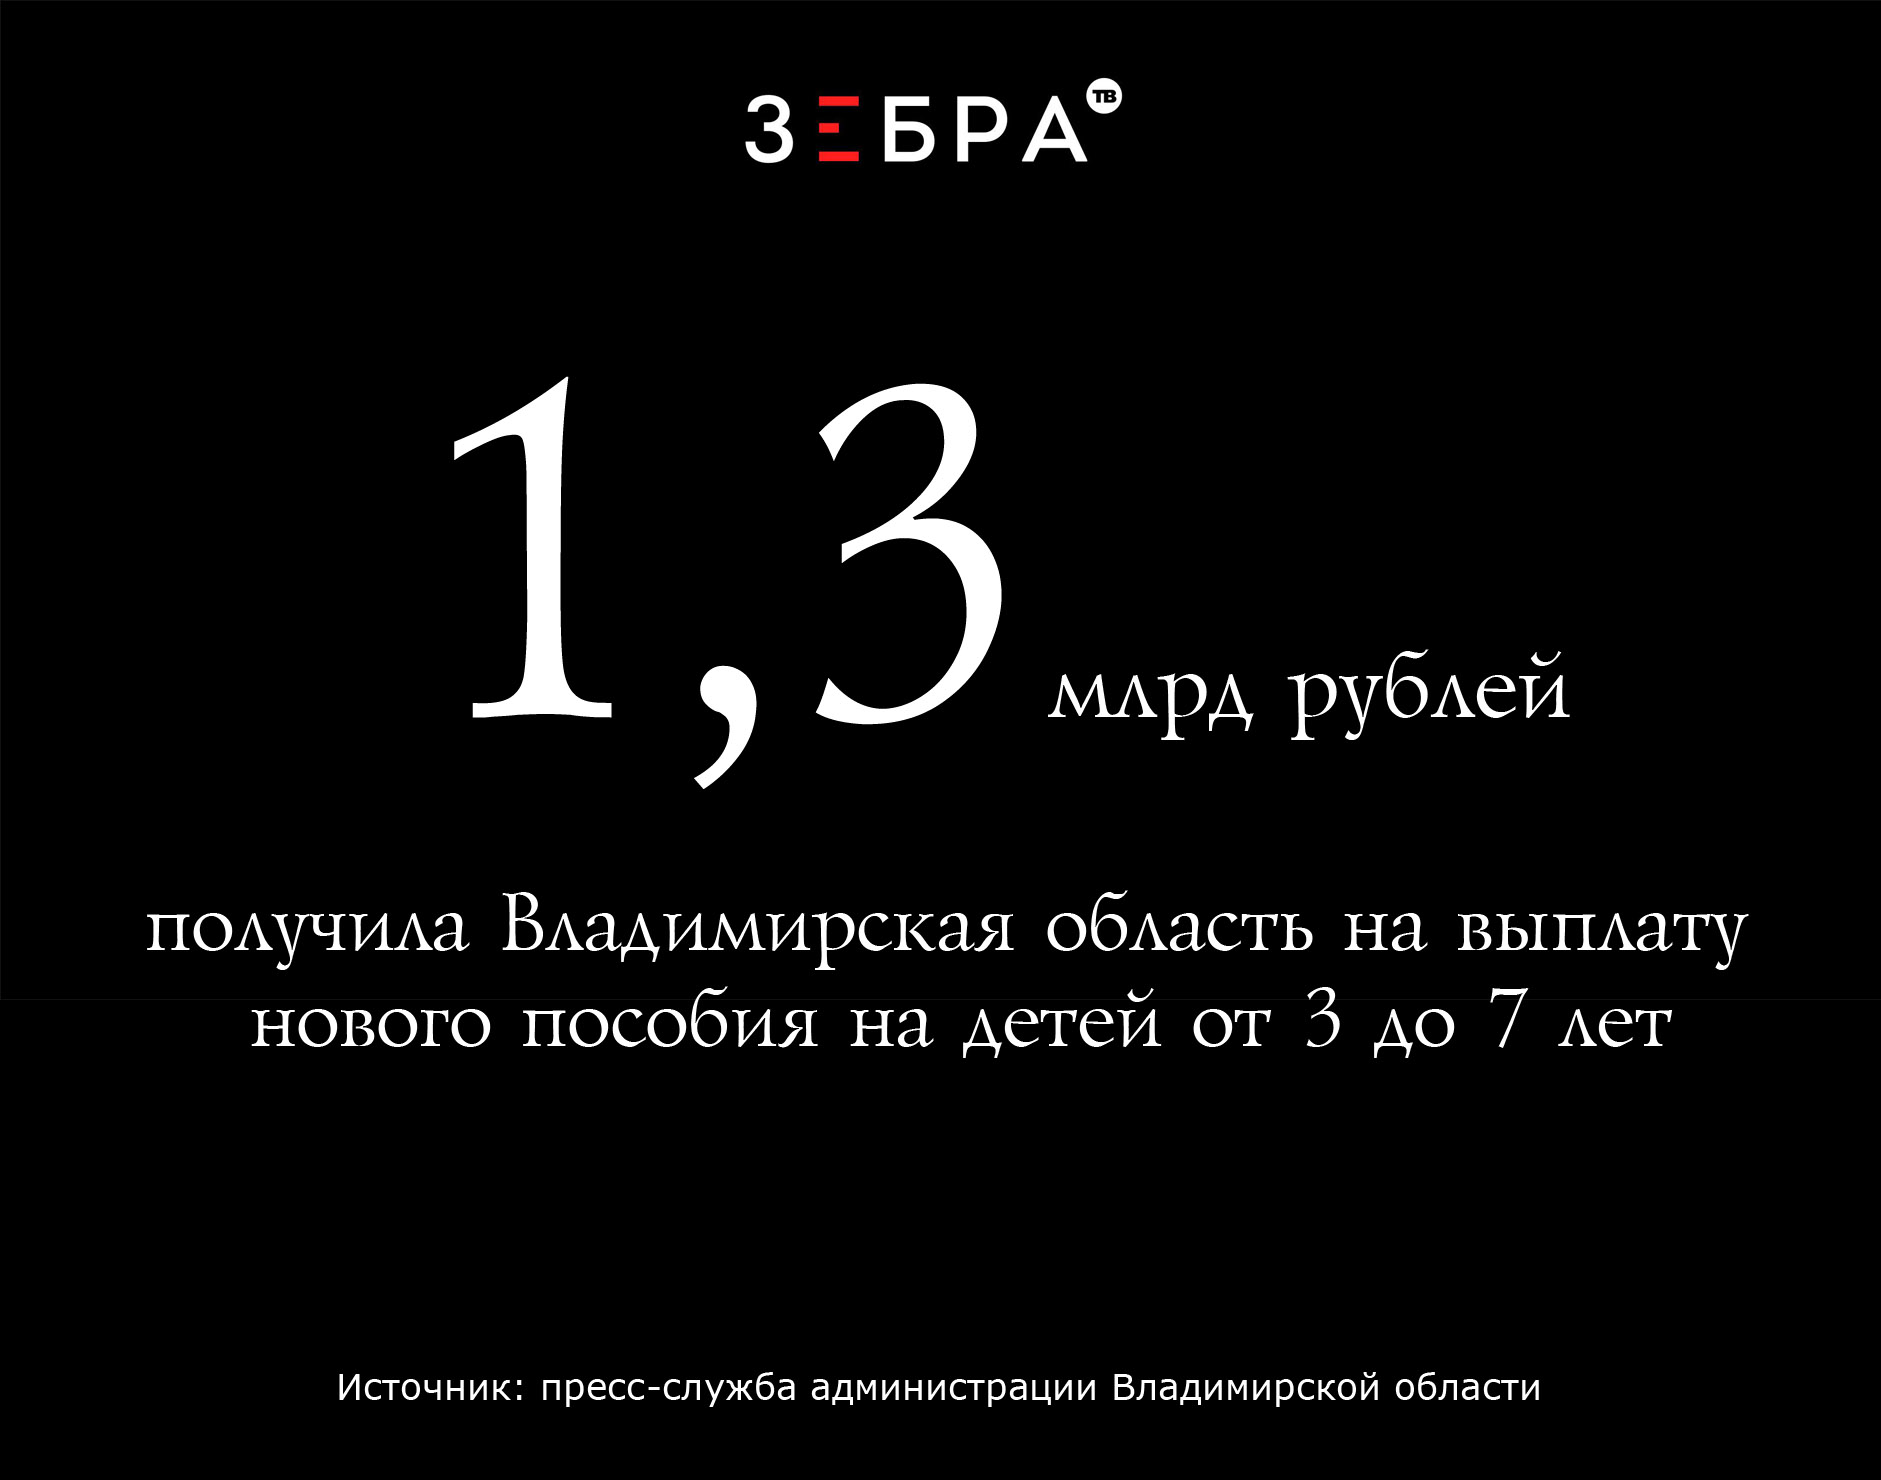 1,3 млрд рублей получила Владимирская область на выплату нового пособия на детей от 3 до 7 лет. Источник: пресс-служба администрации Владимирской области